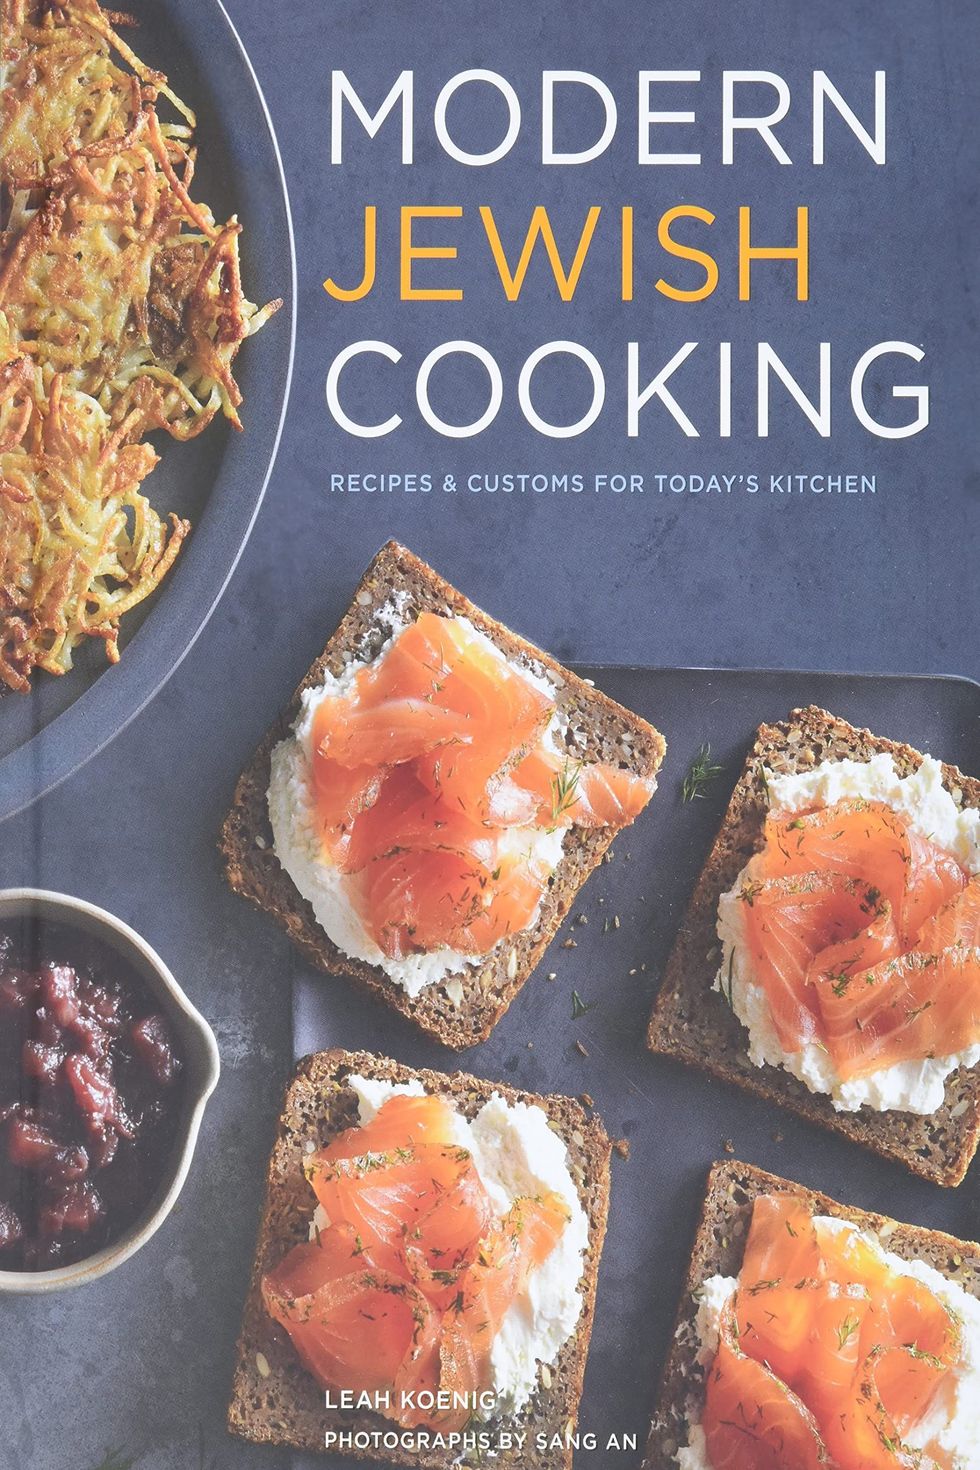 'Modern Jewish Cooking' by Leah Koenig